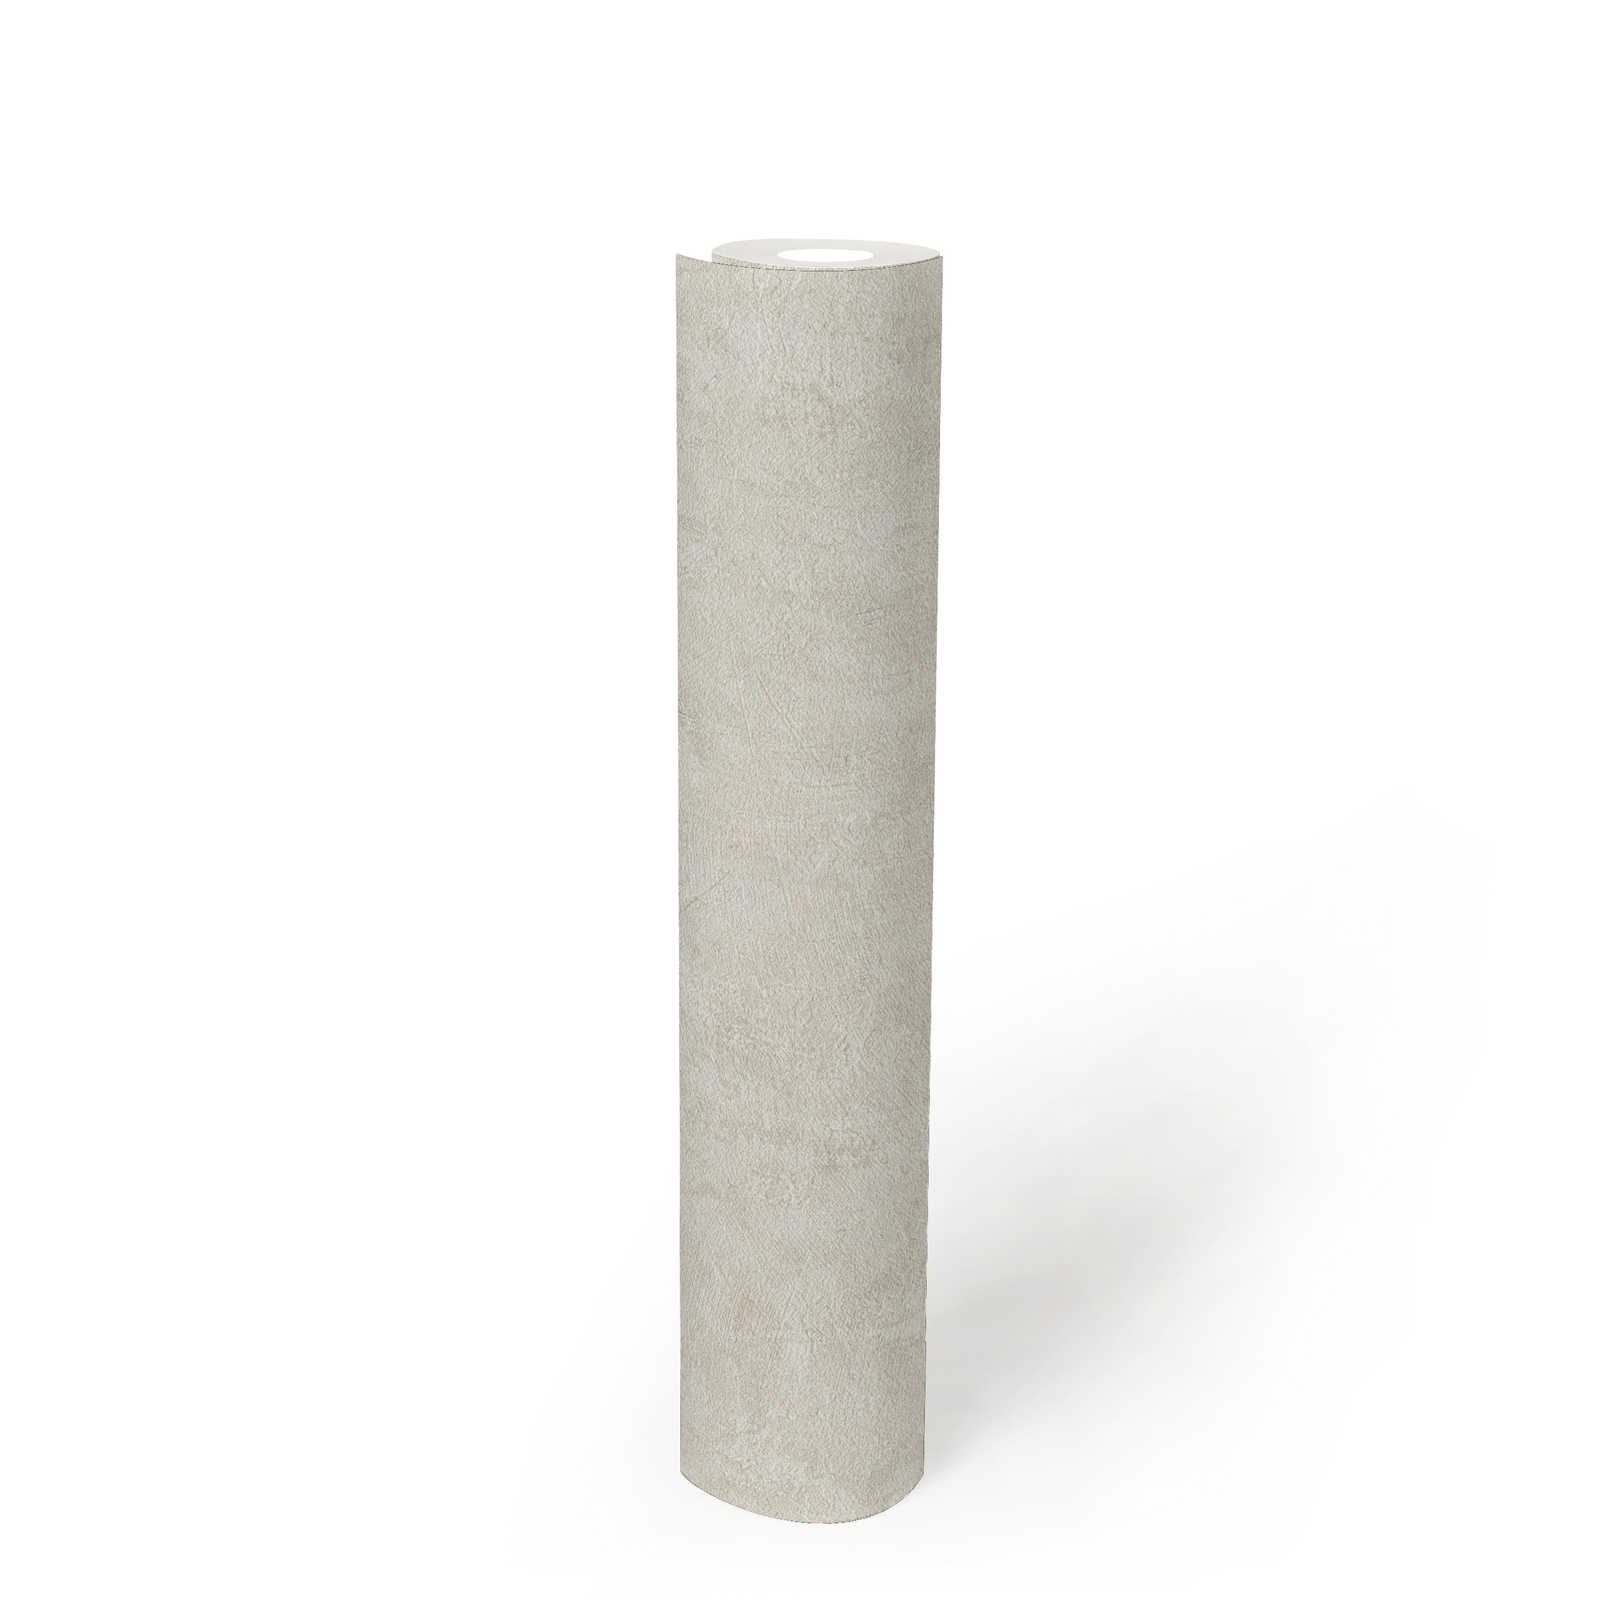             Papel pintado tejido-no tejido con aspecto de hormigón y efecto texturizado Sin PVC - gris, beige
        